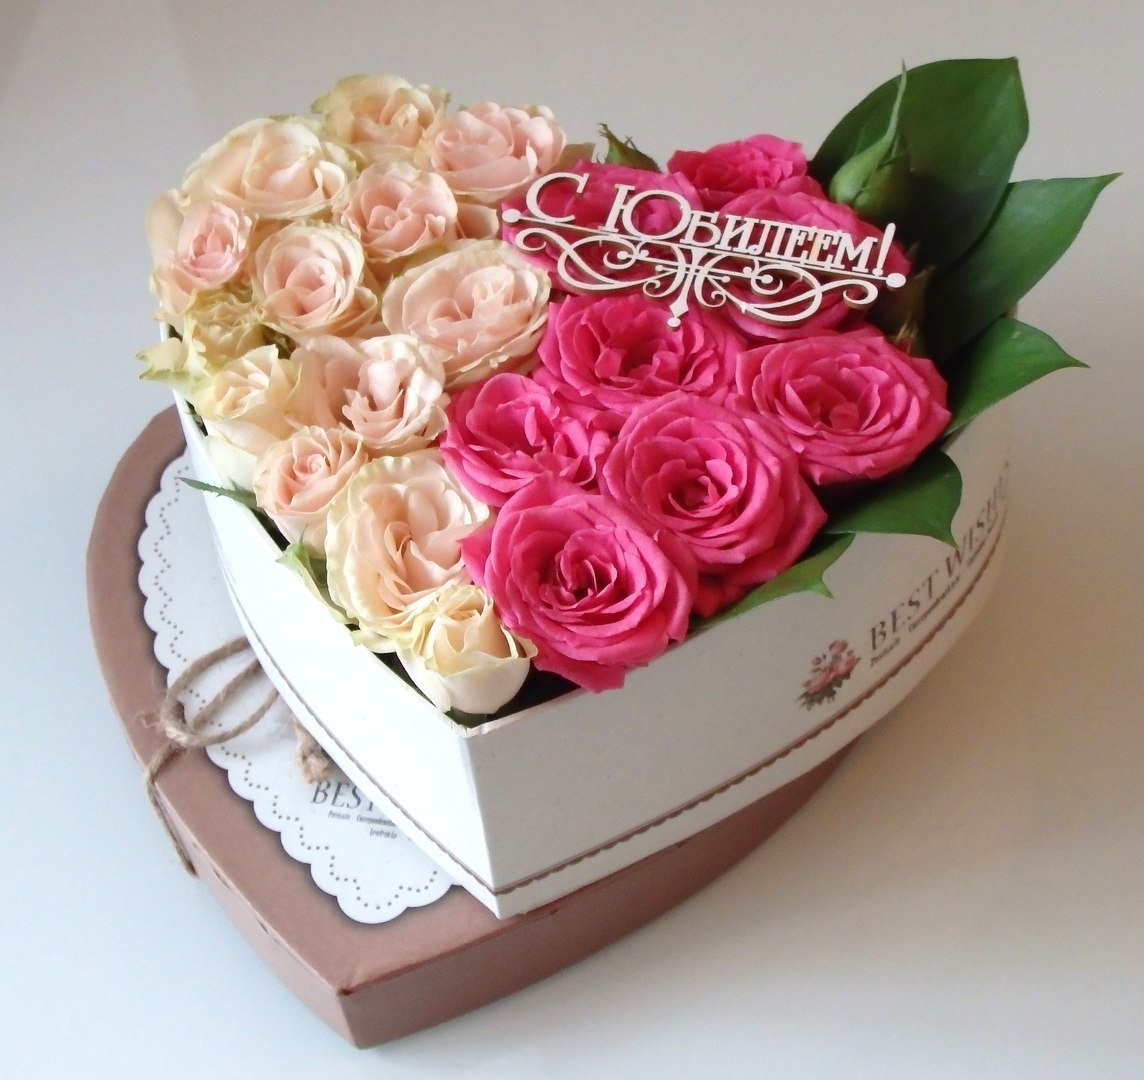 С днем рождения женщине цветы в коробке. Цветы в коробке. Розы в коробке. Красивый букет цветов в коробке. Розы в коробочке.